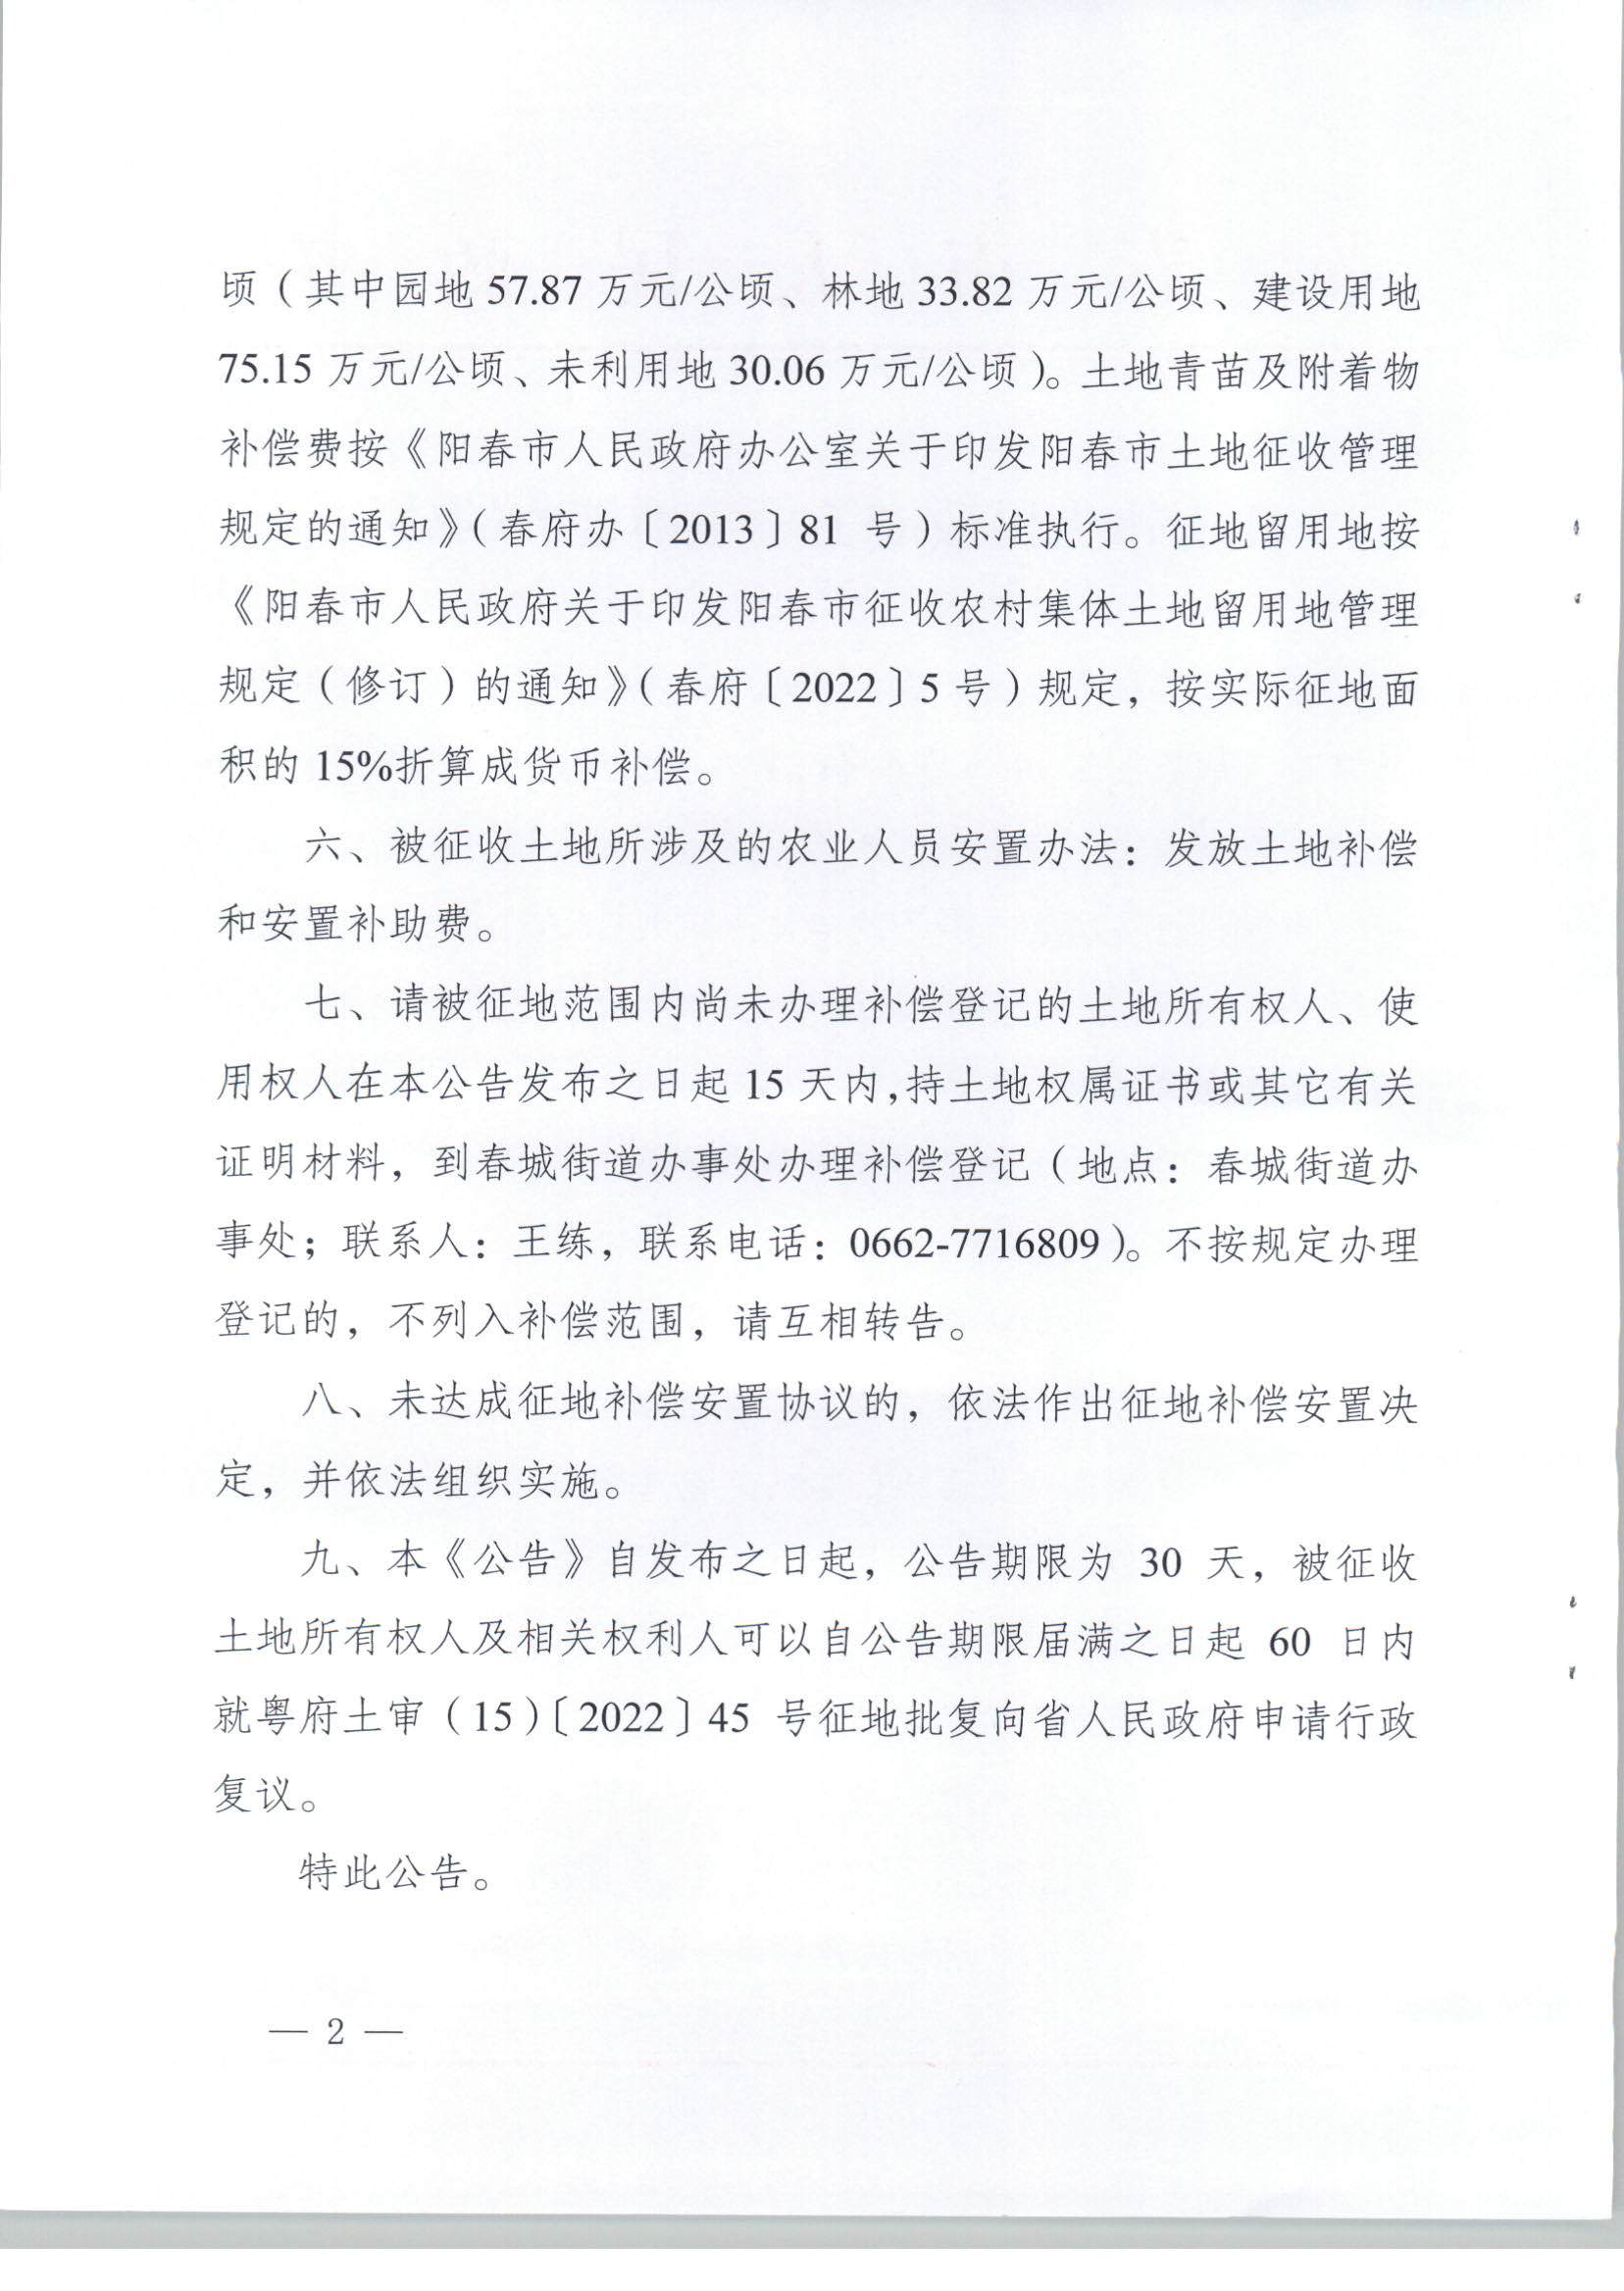 阳春市人民政府关于土地征收的公告（2021年度第十六批次）_页面_2.jpg